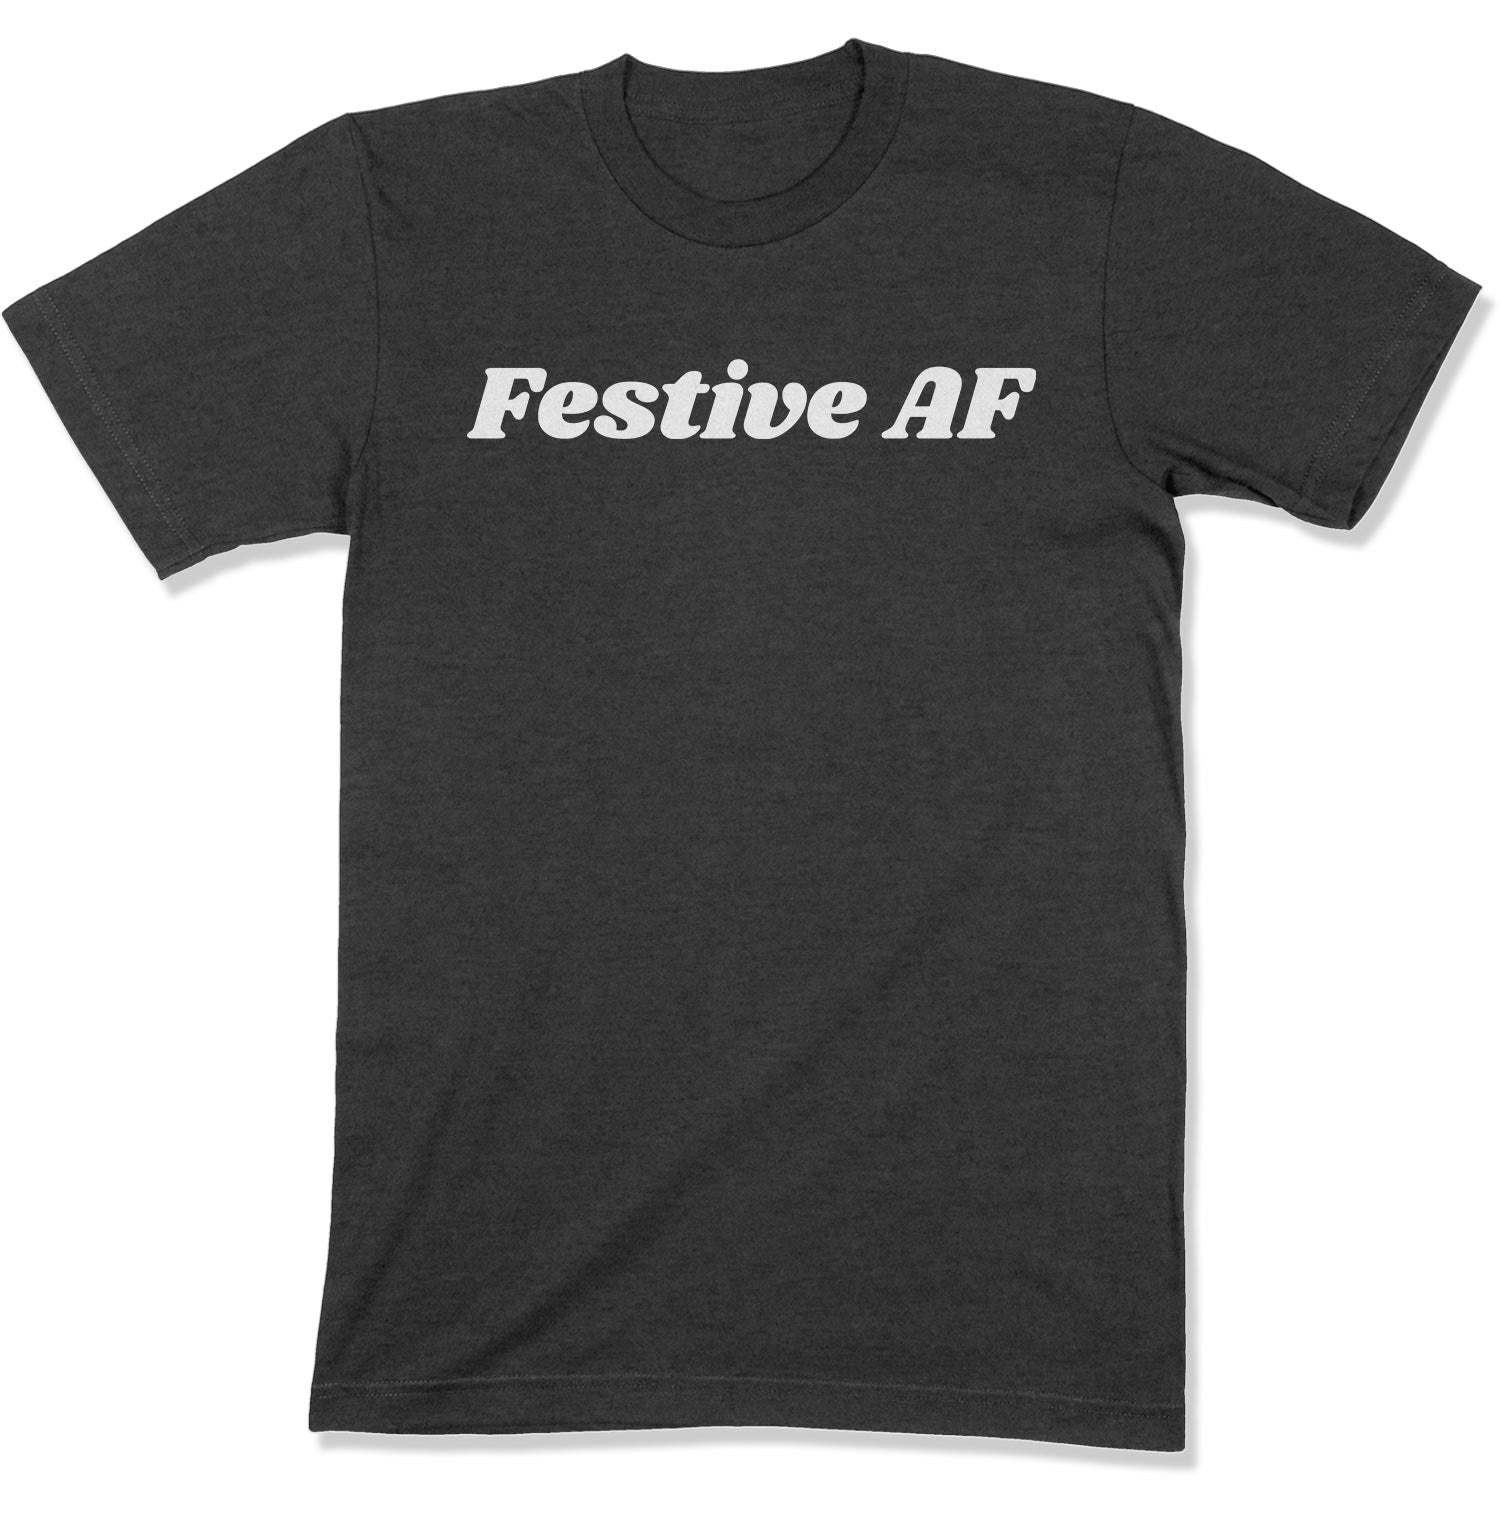 Festive AF Unisex T-Shirt-East Coast AF Apparel